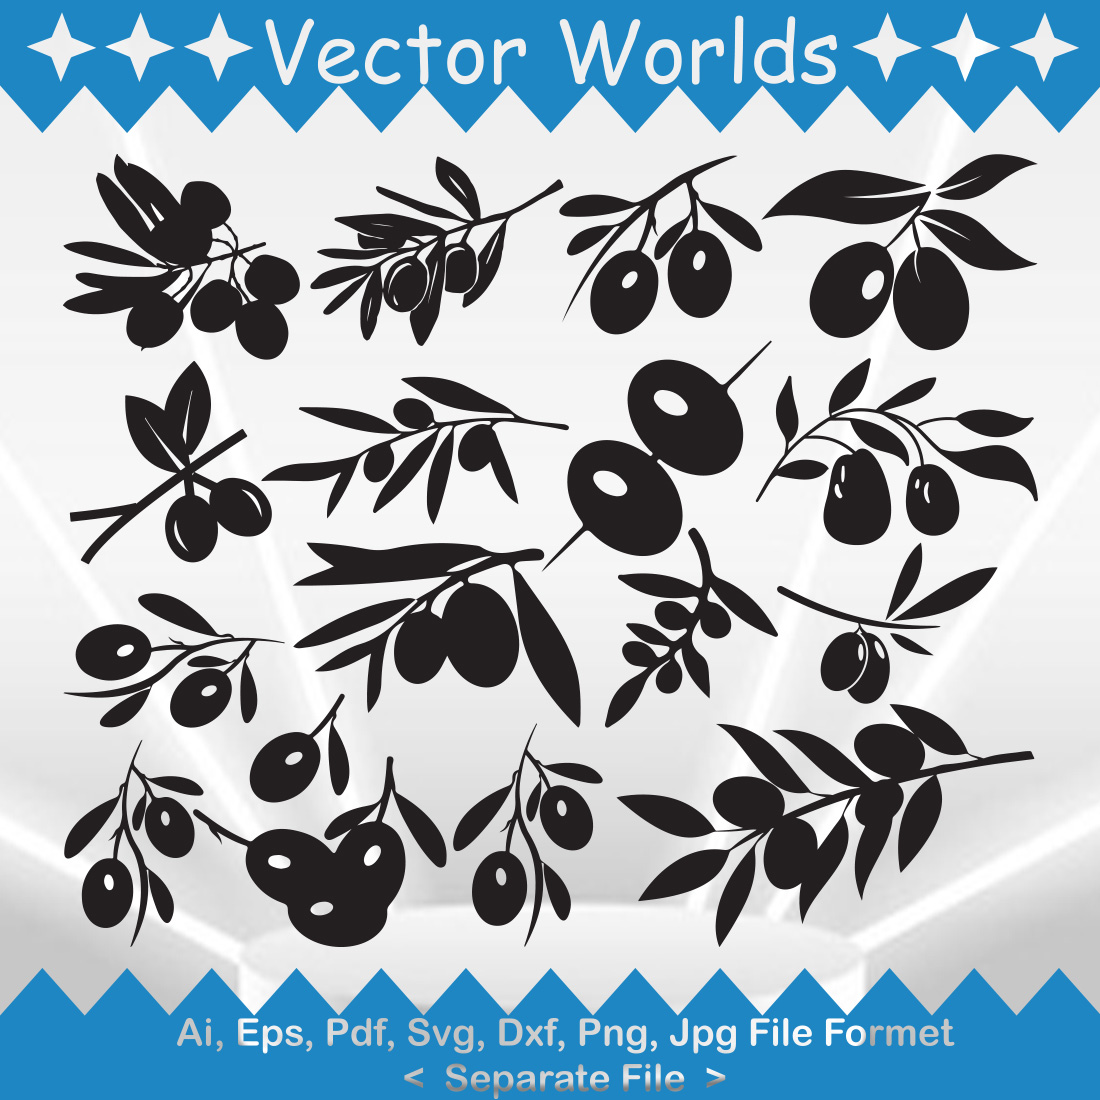 Olive SVG Vector Design cover image.